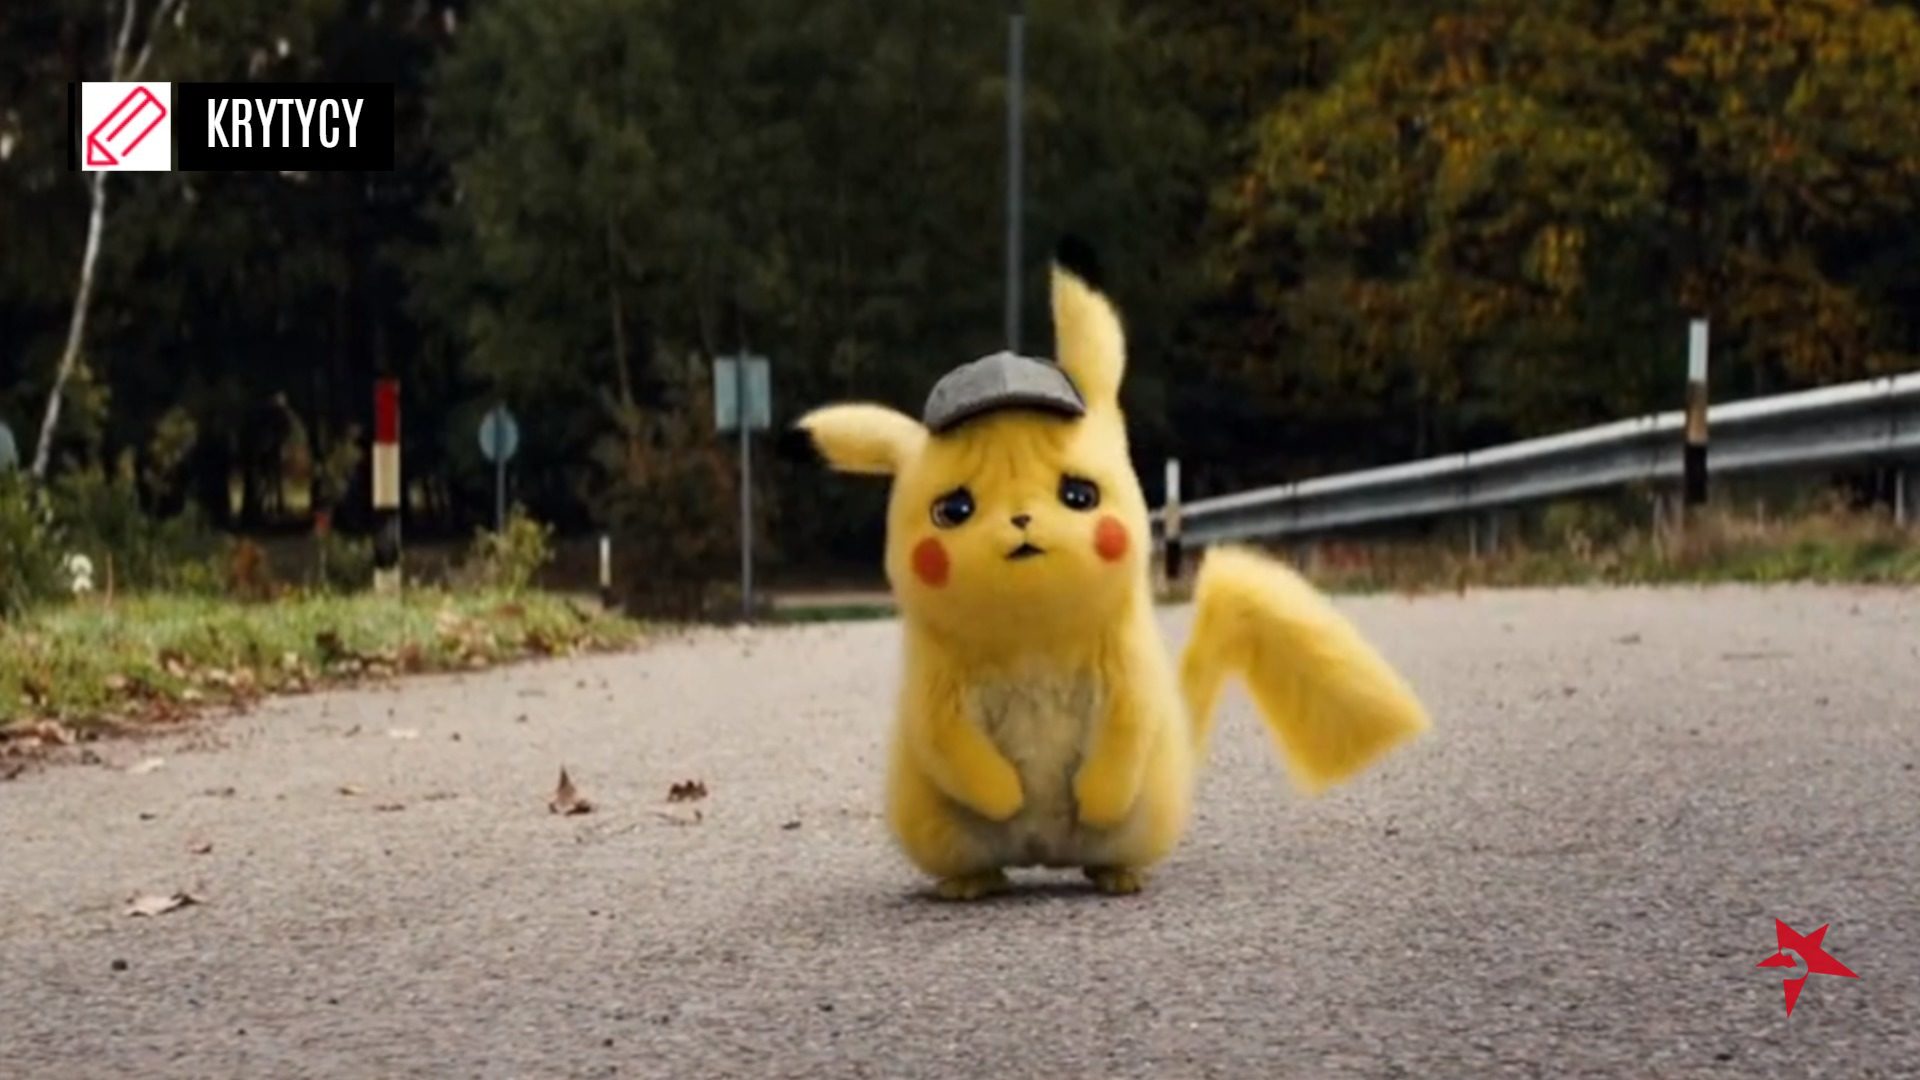 Pokémon: Detektyw Pikachu recenzja recenzje film rotten tomatoes box office